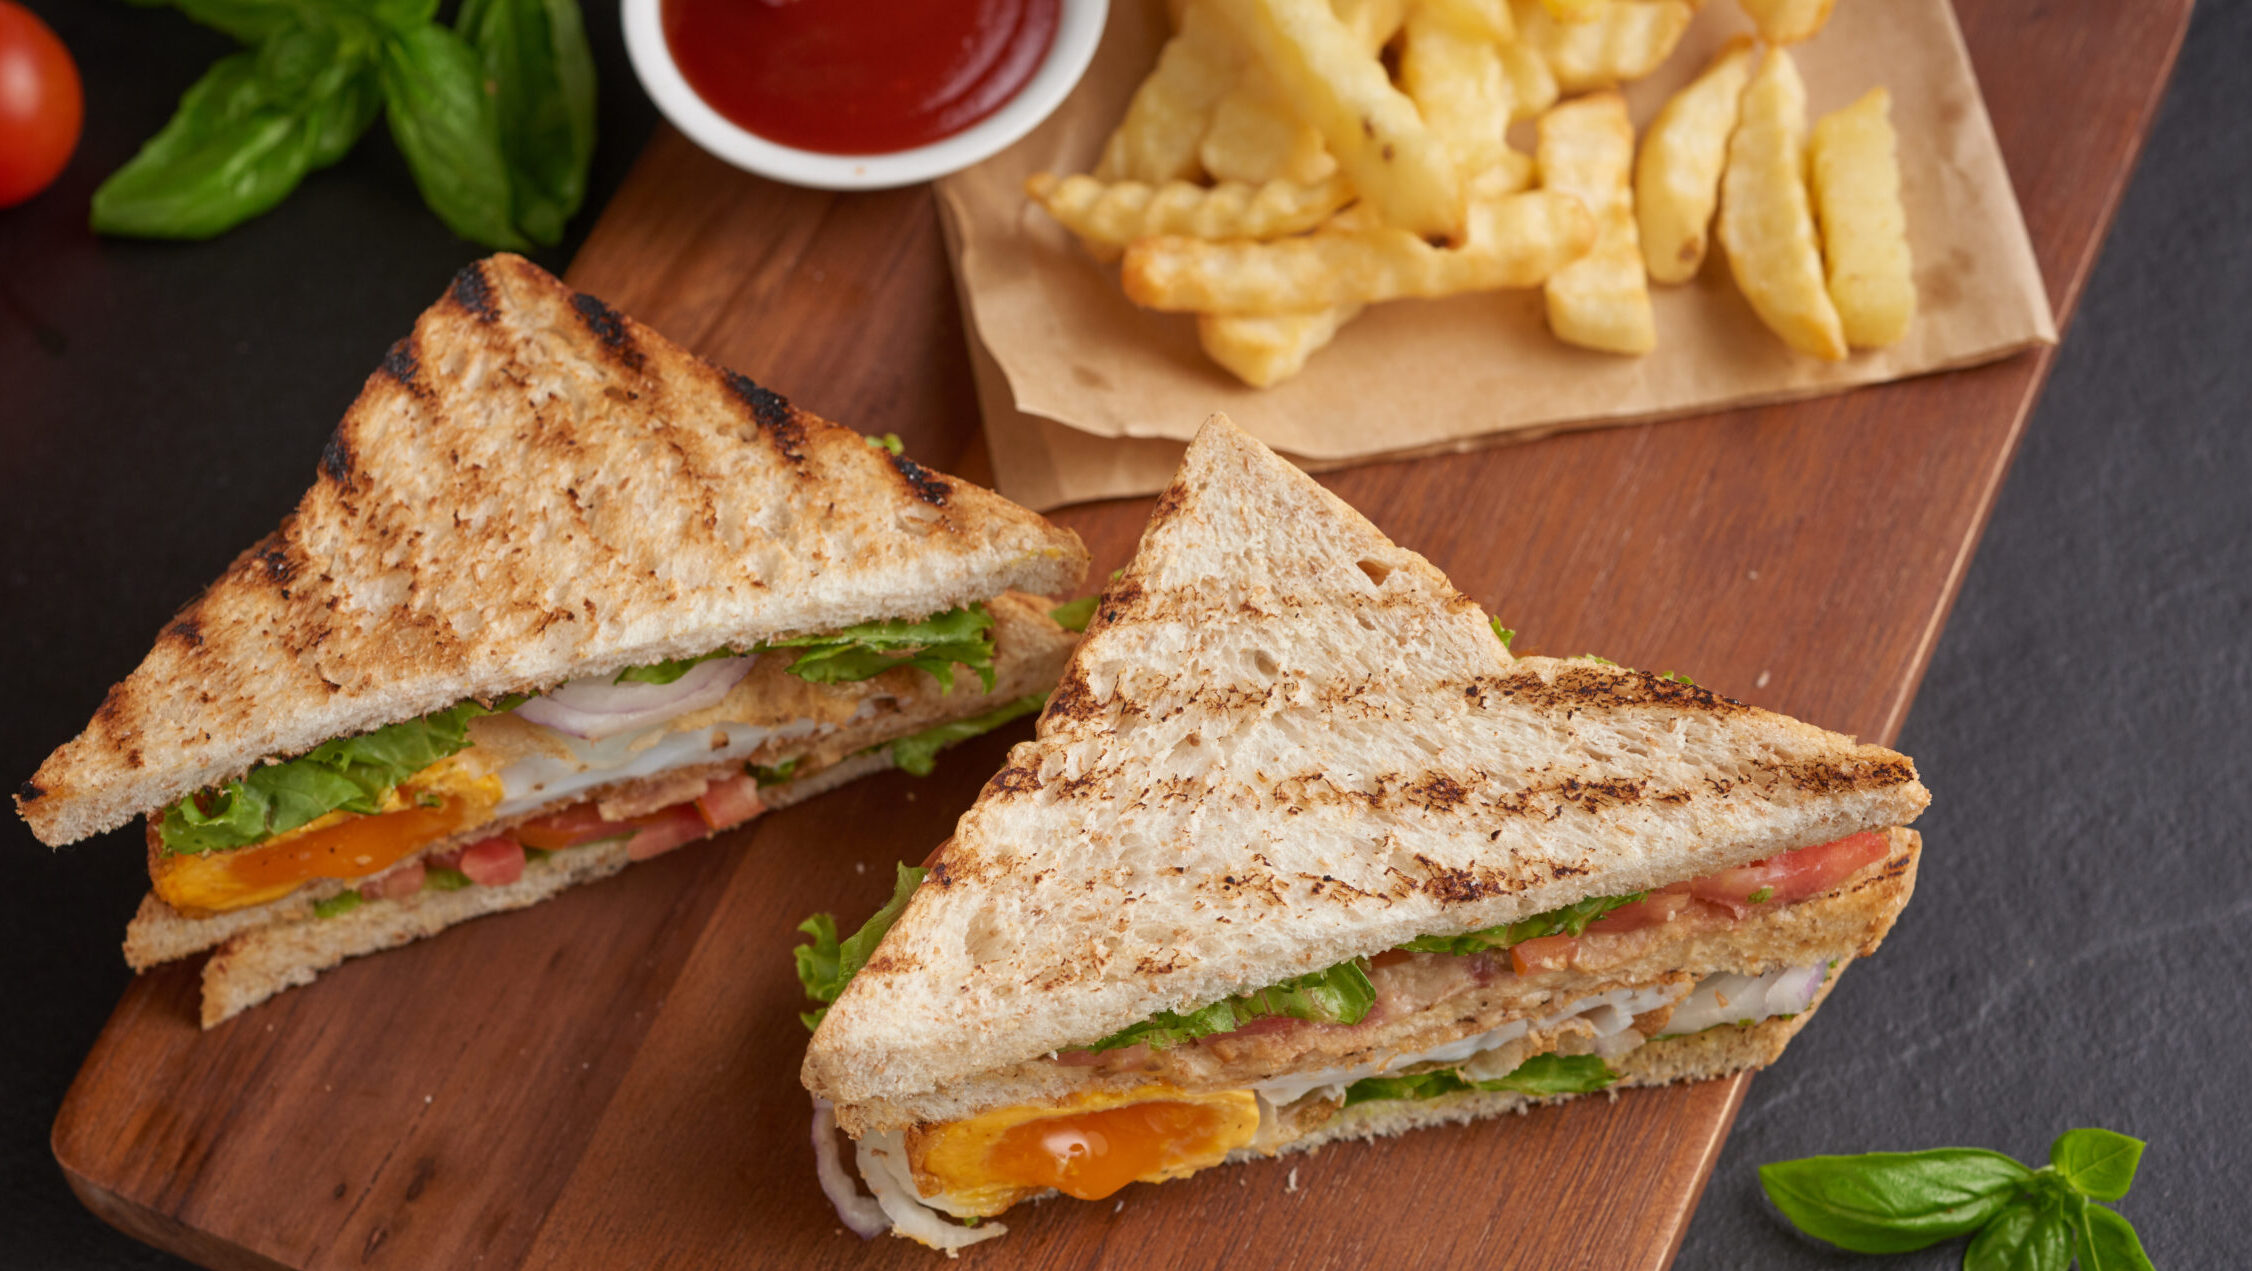 Grill Sandwich - Club Sandwich Recipe